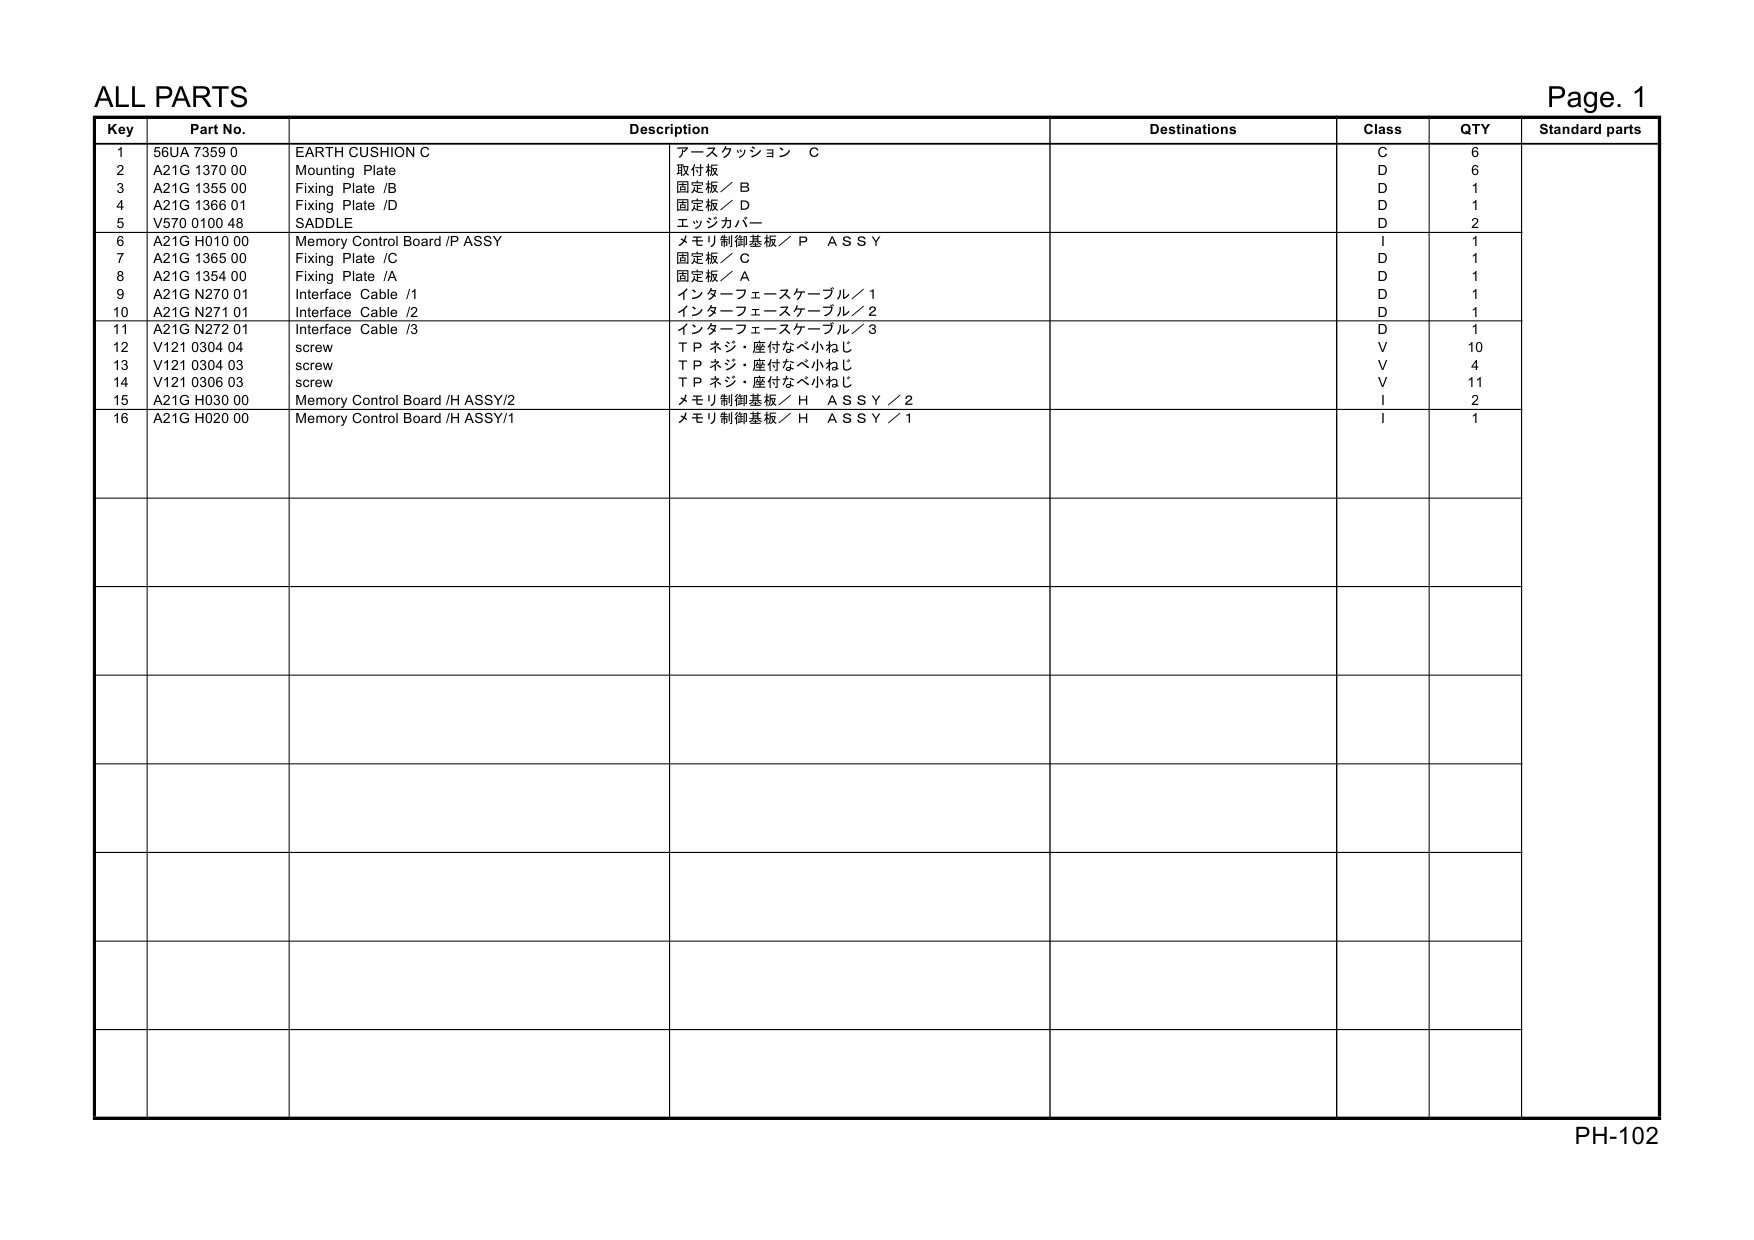 Konica-Minolta Options PH-102 A21G Parts Manual-6